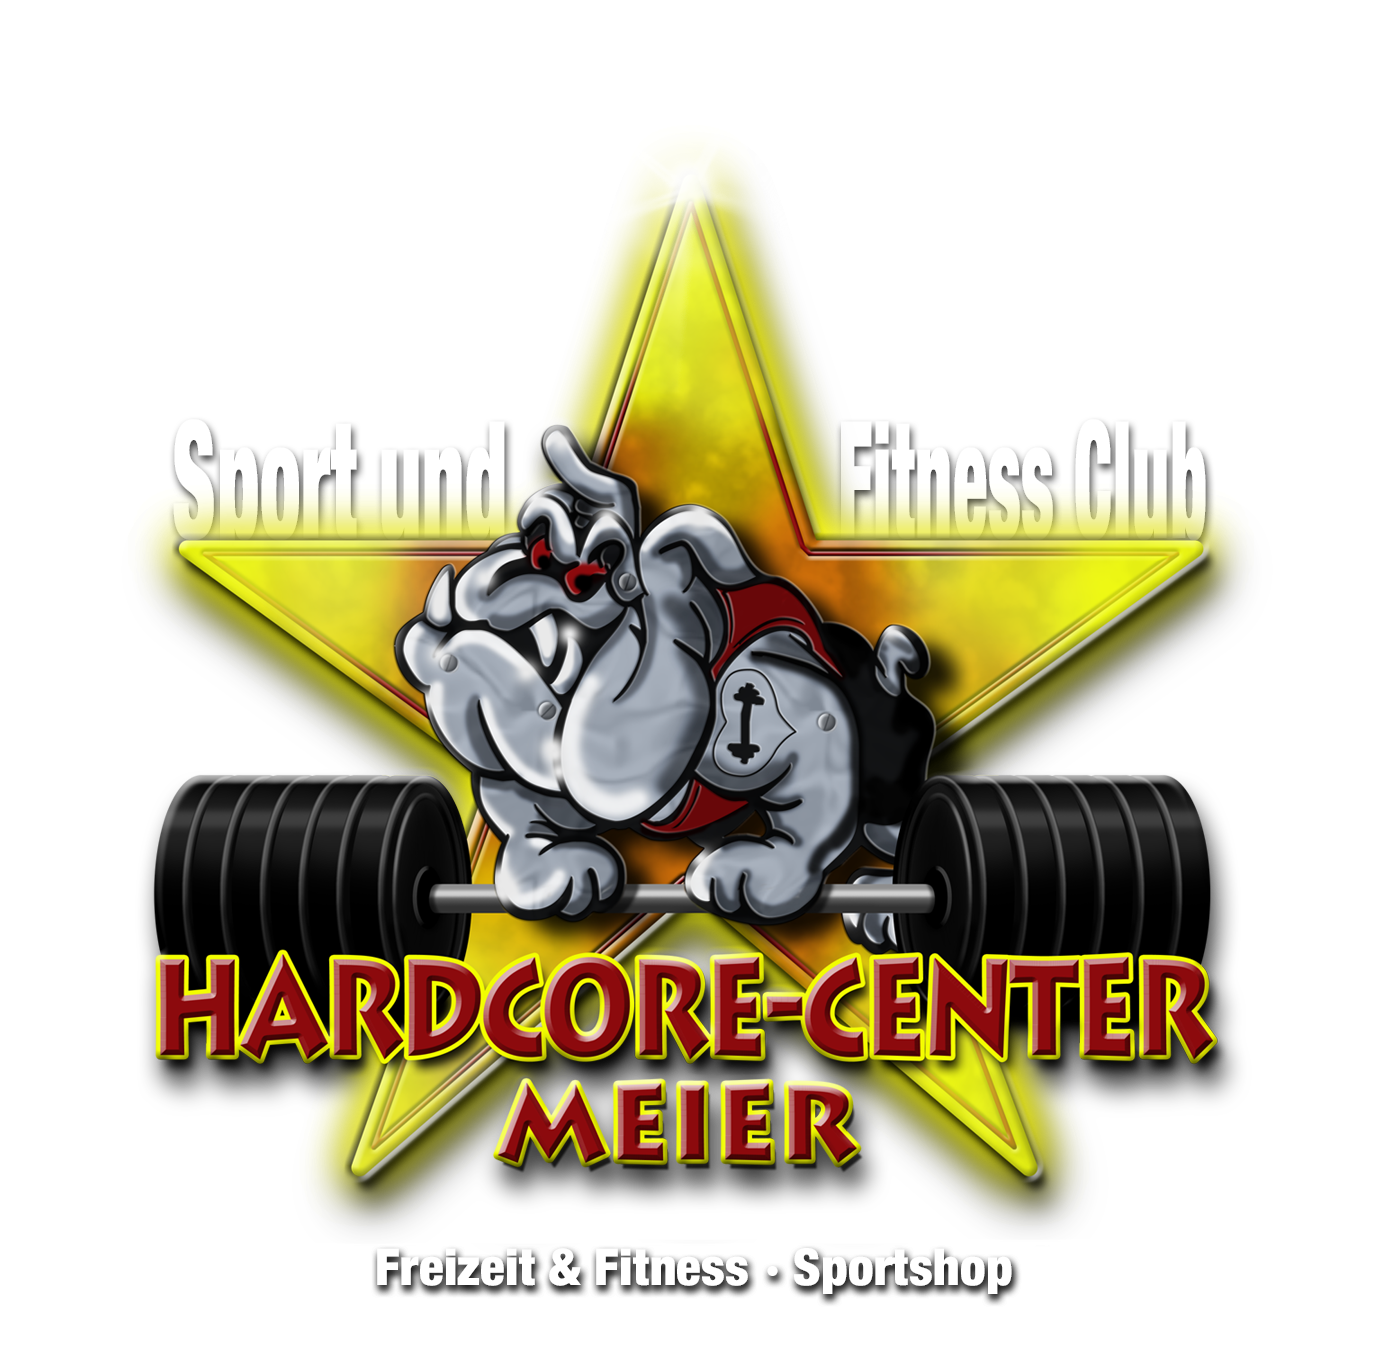 Sport & Fitness Club - HARDCORE-CENTER MEIER 90542 Eckental